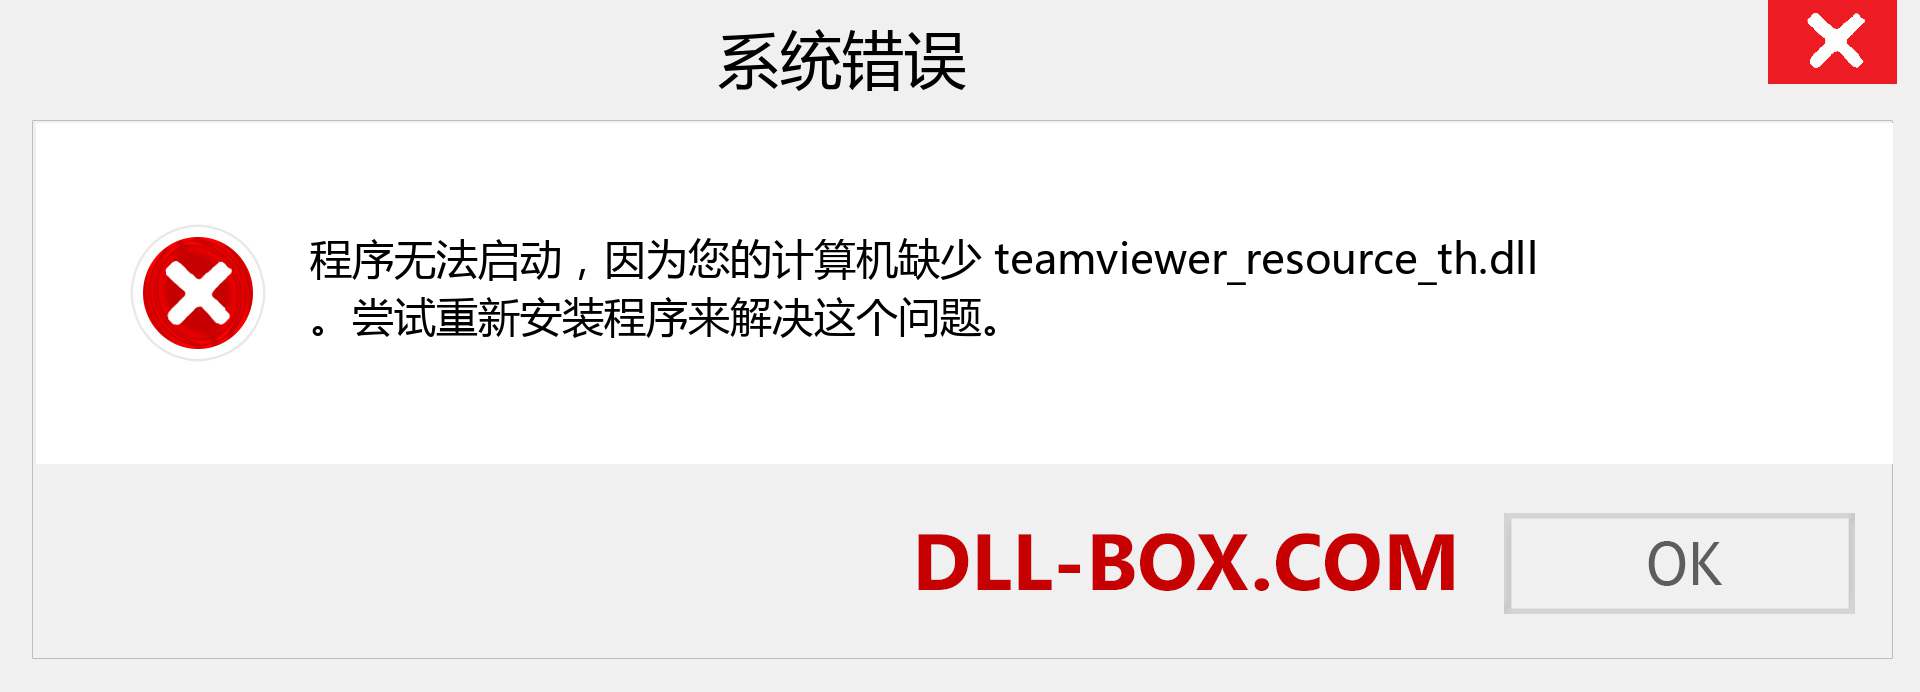 teamviewer_resource_th.dll 文件丢失？。 适用于 Windows 7、8、10 的下载 - 修复 Windows、照片、图像上的 teamviewer_resource_th dll 丢失错误